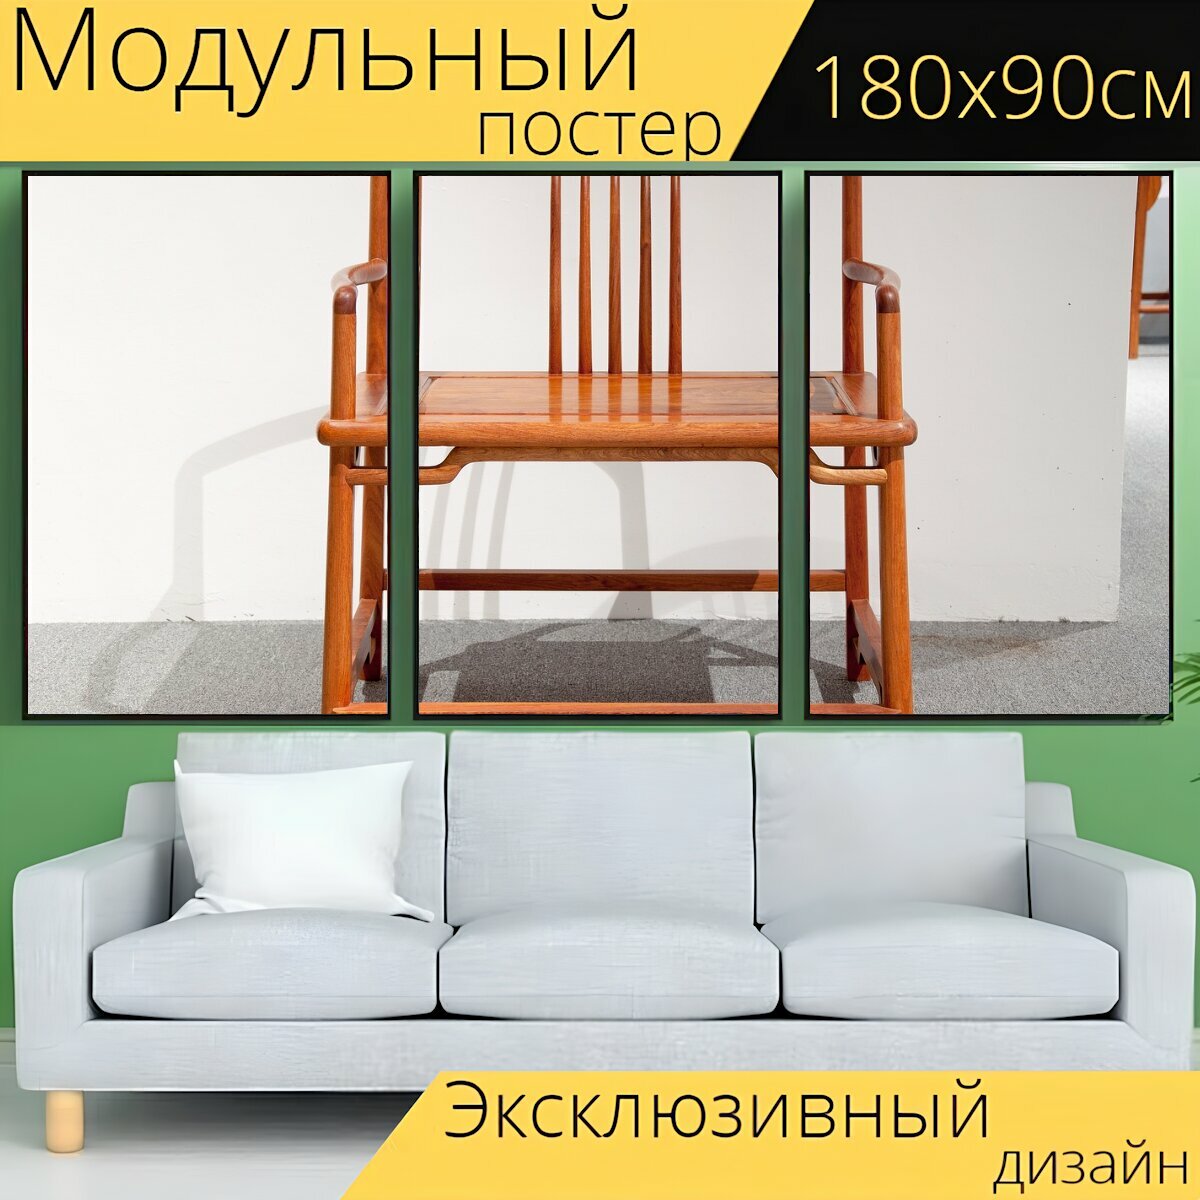 Модульный постер "Стул, твердое дерево, мебель" 180 x 90 см. для интерьера